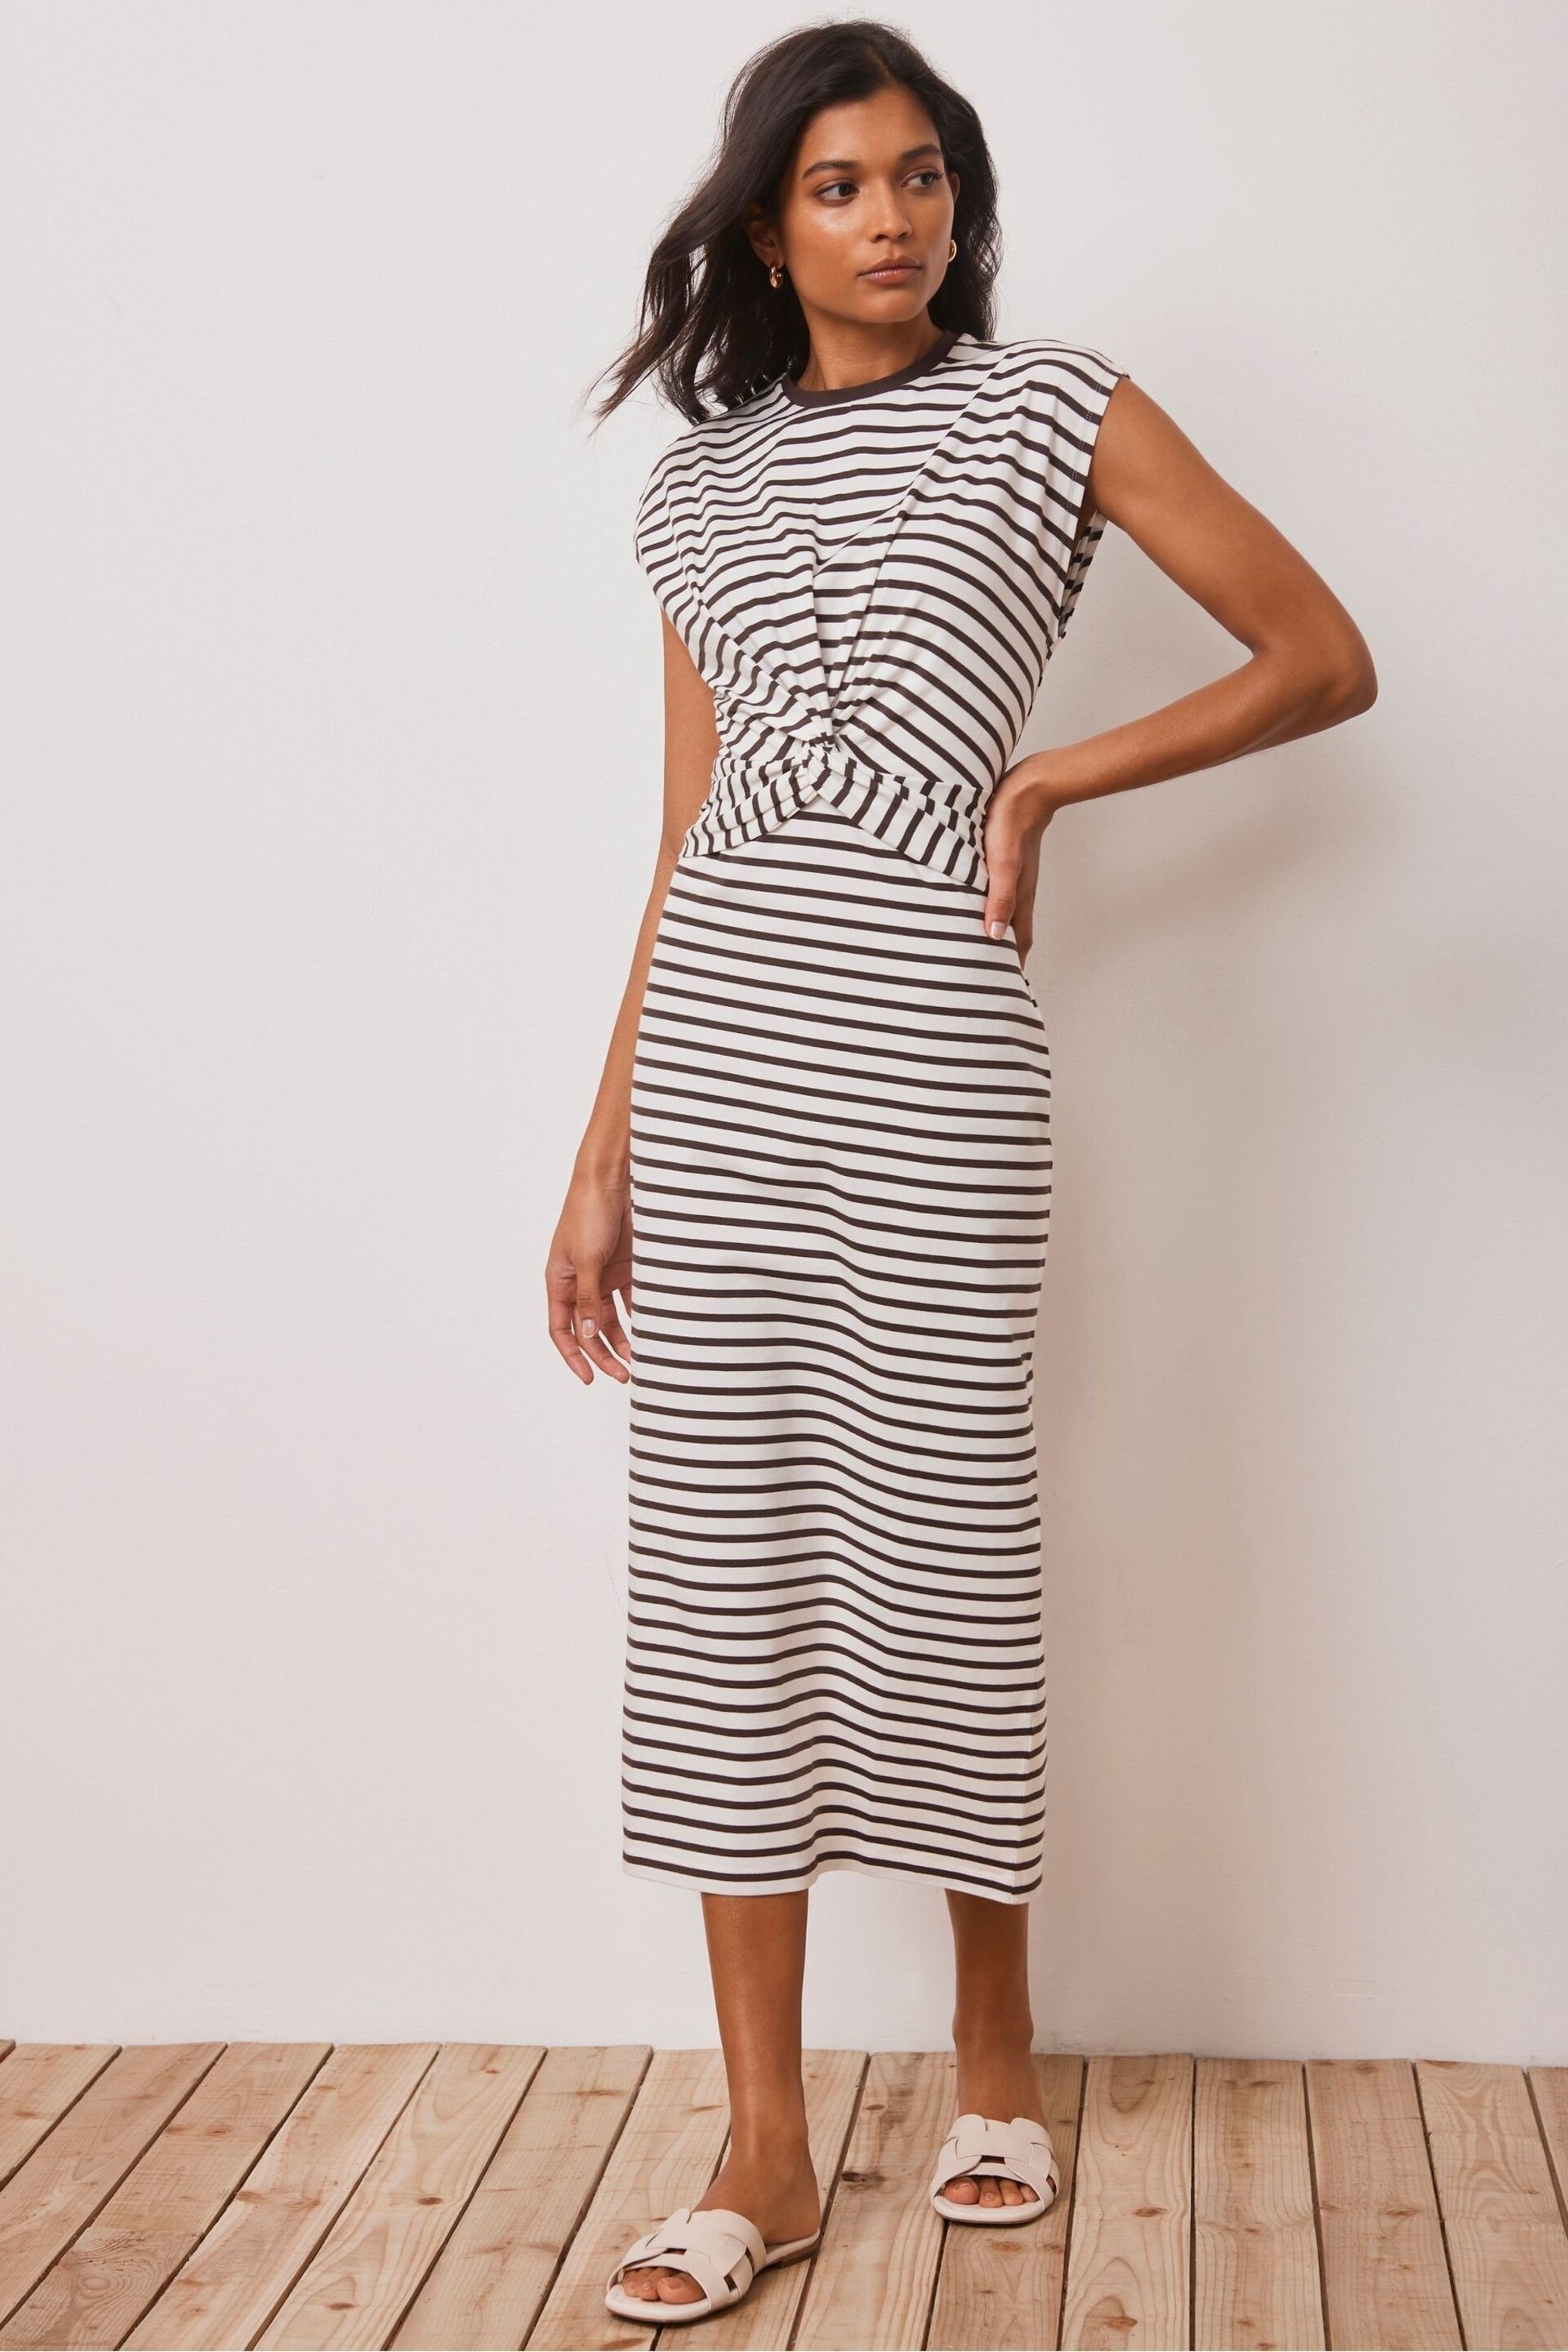 Mint Velvet Brown Twist Stripe Jersey Dress - Image 1 of 4